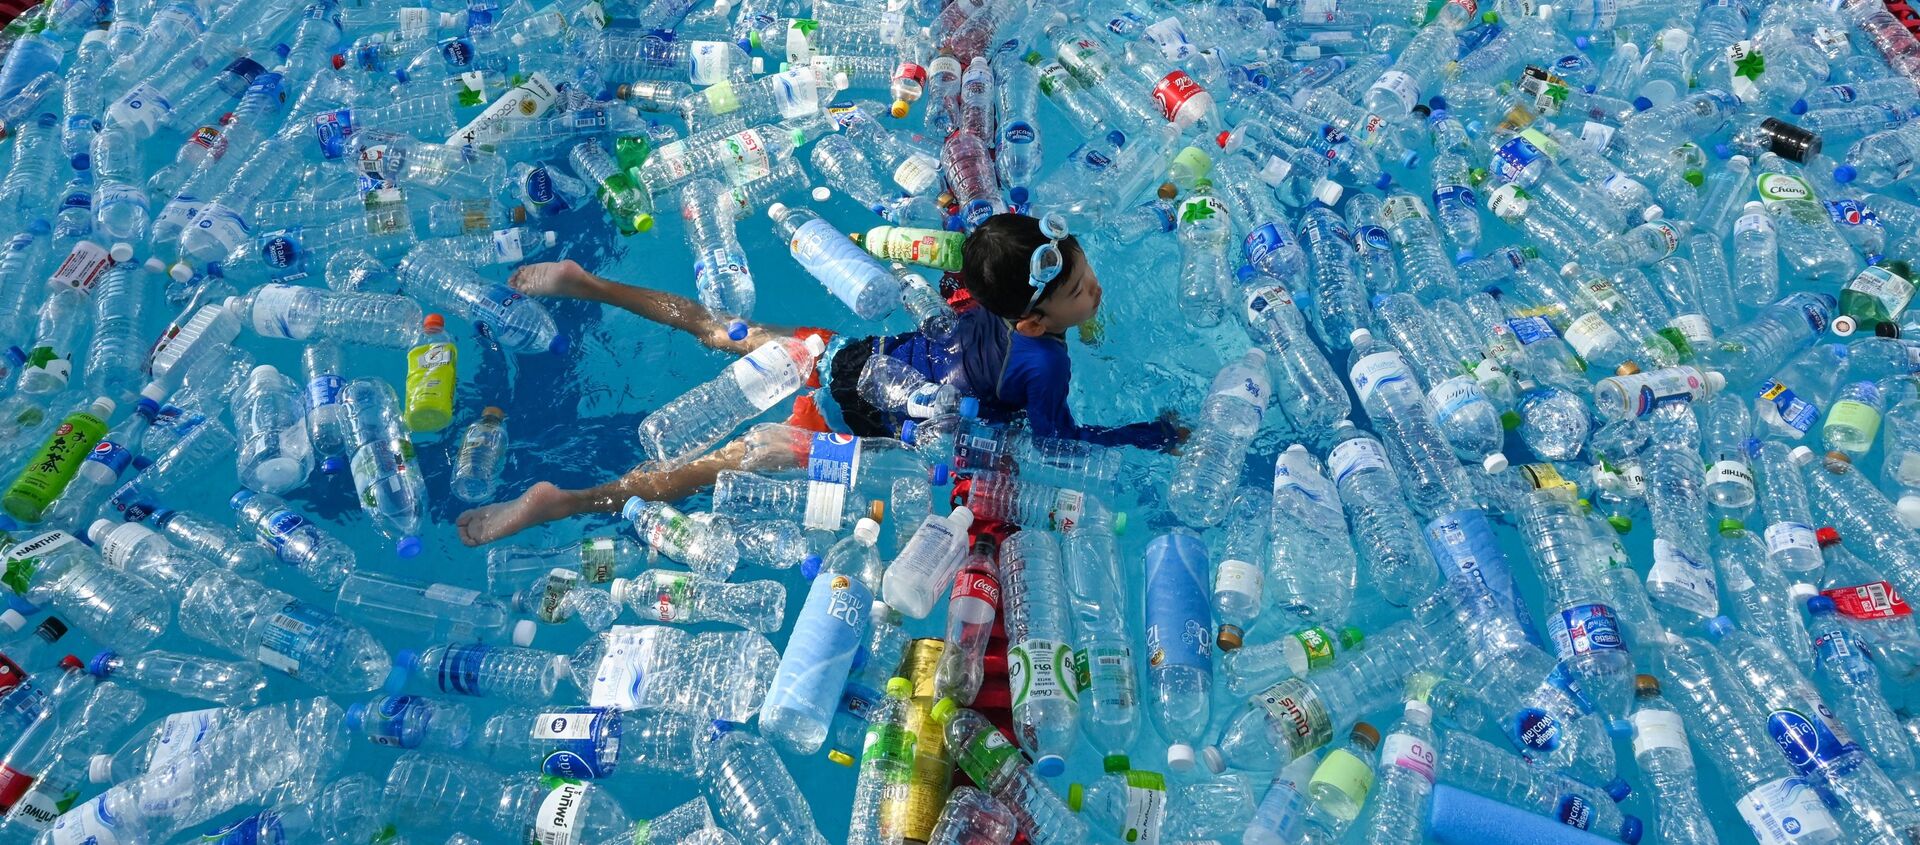 Đứa trẻ bơi trong bể chứa đầy chai nhựa trong chiến dịch thông tin về Ngày Đại dương thế giới ở Bangkok, Thái Lan - Sputnik Việt Nam, 1920, 30.06.2019